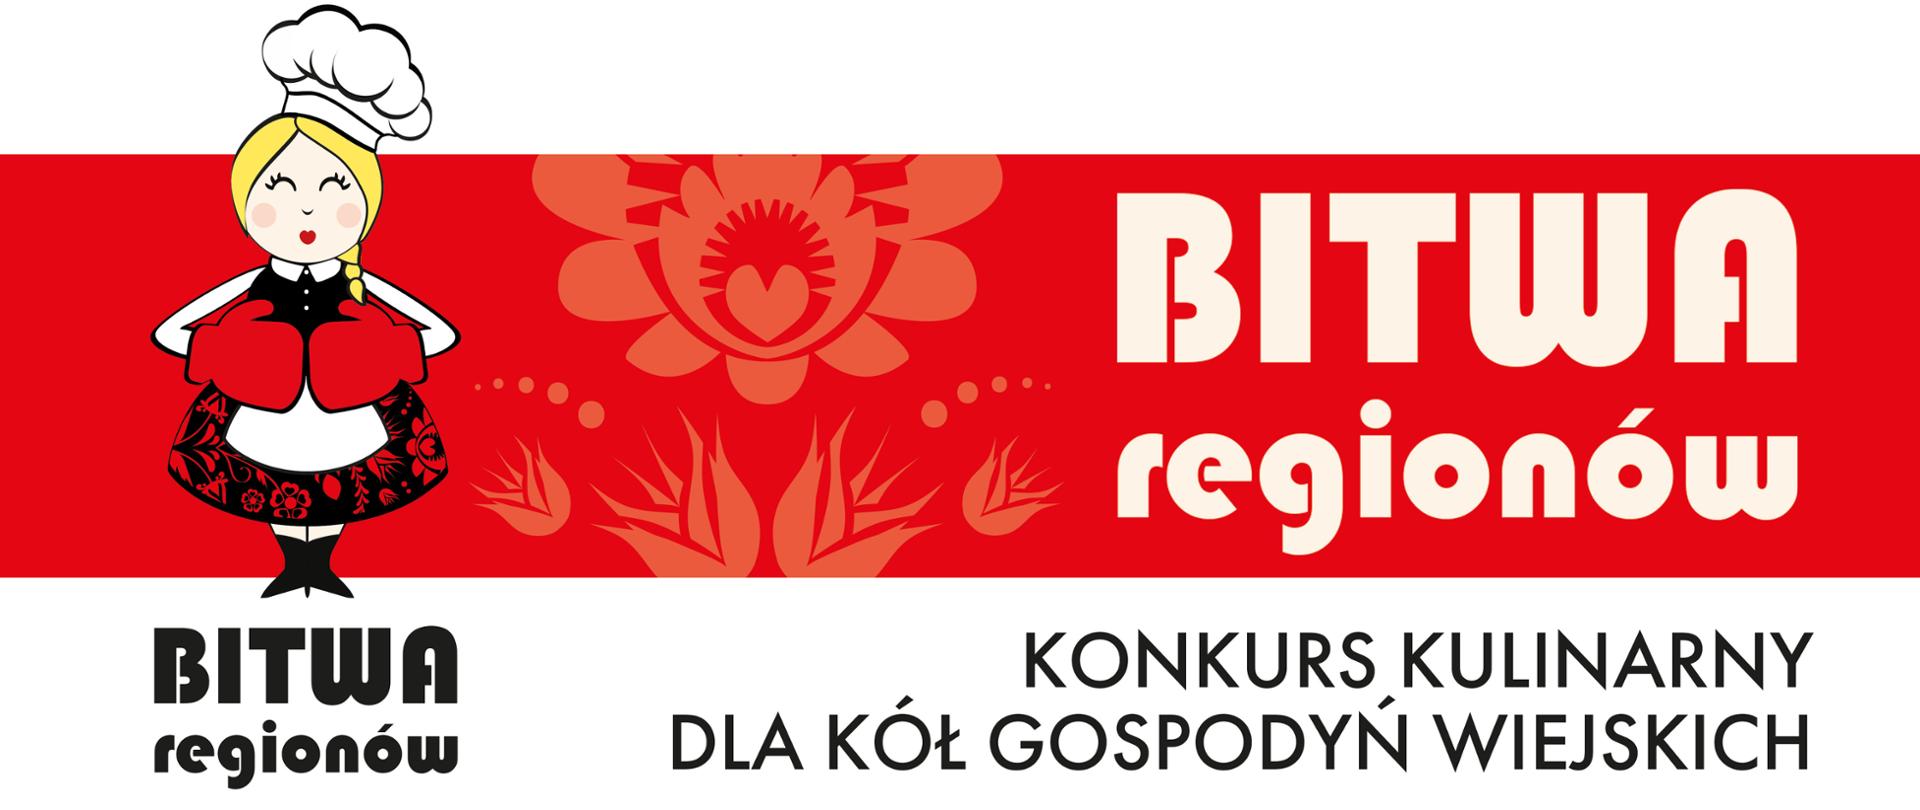 Plakat konkursu kulinarnego Bitwa regionów